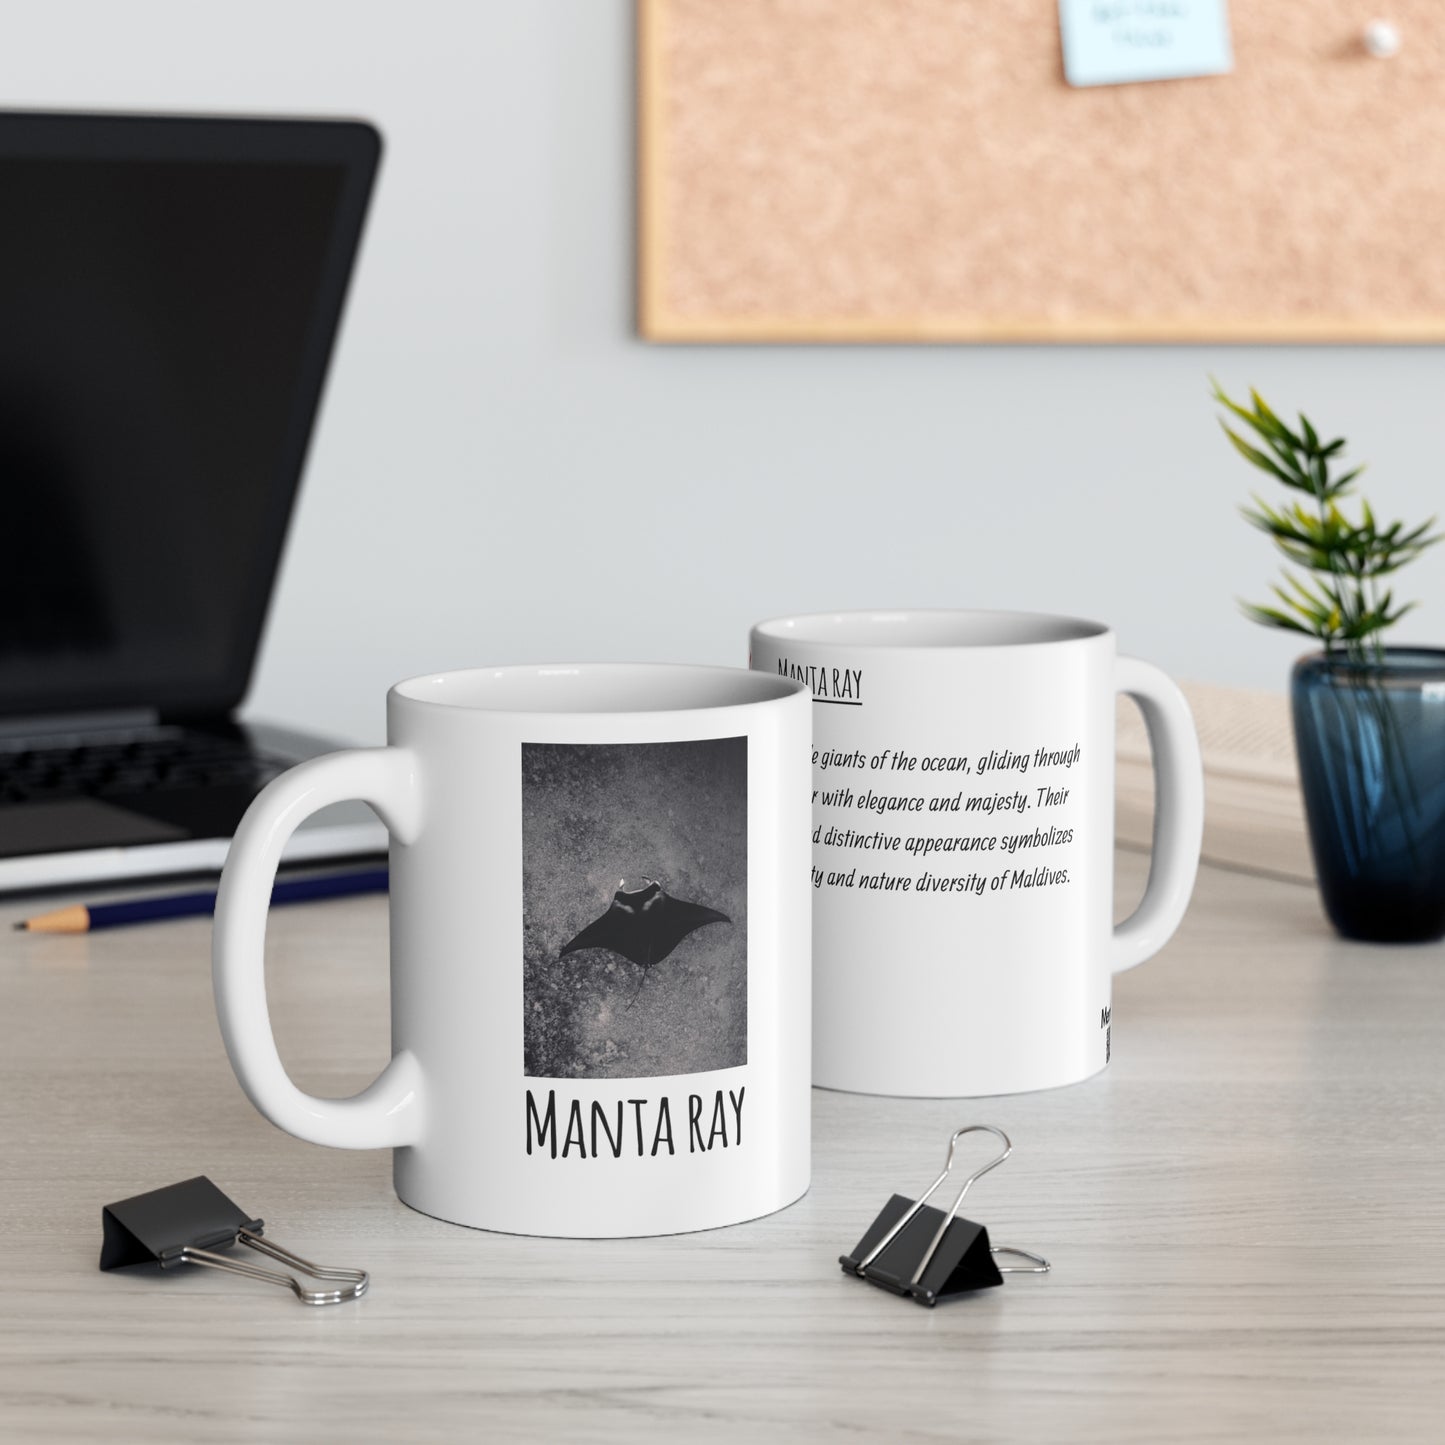 Manta ray 2 - Ceramic Mug 11oz